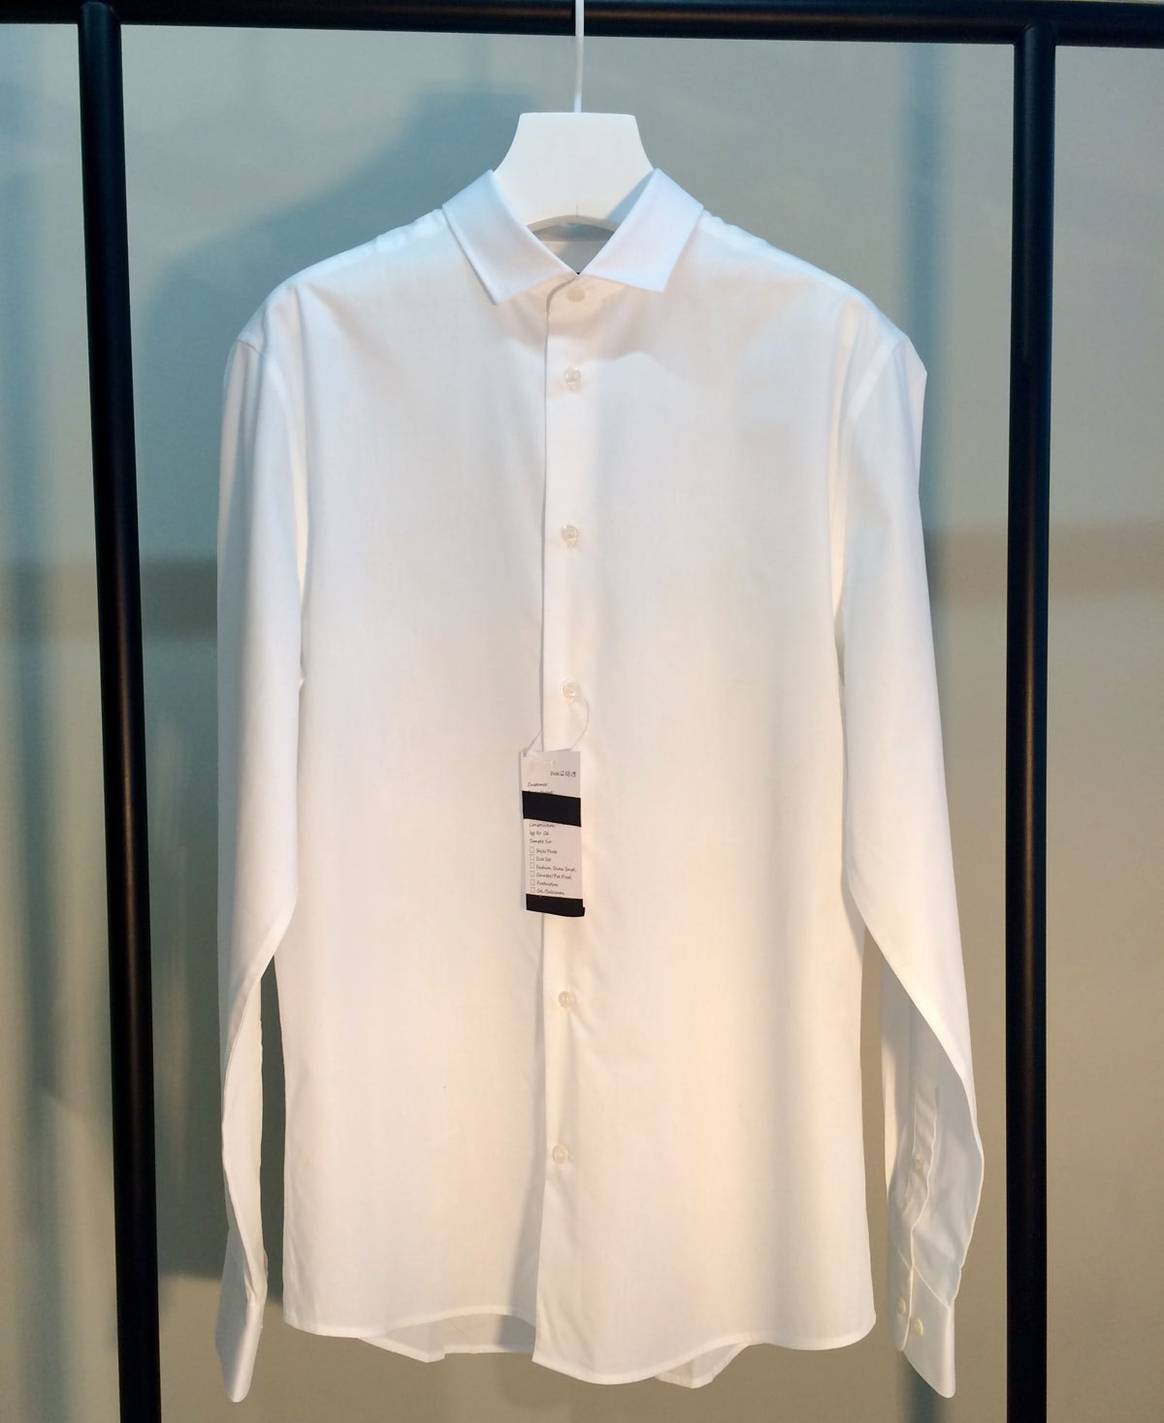 Maßanfertigung für jedermann: H&M und ZyseMe testen individualisierte Hemden